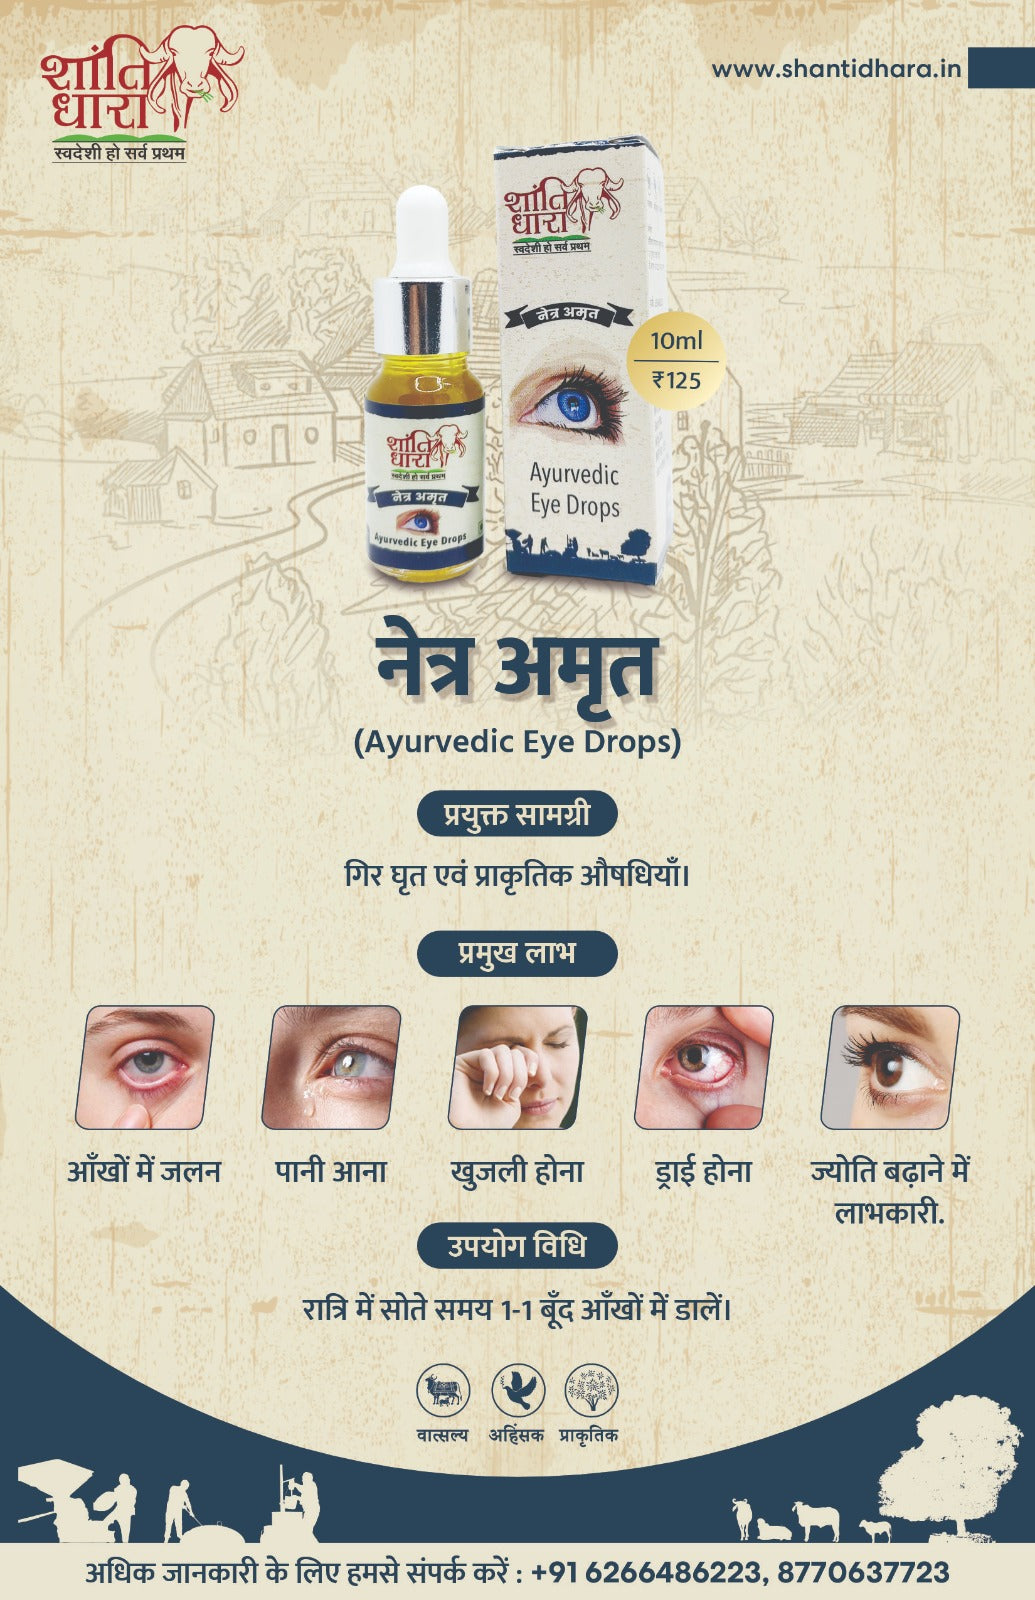 नेत्र अमृत ( Ayurvedic Eye Drops) (Netra Amrit) आखों की ड्रॉप